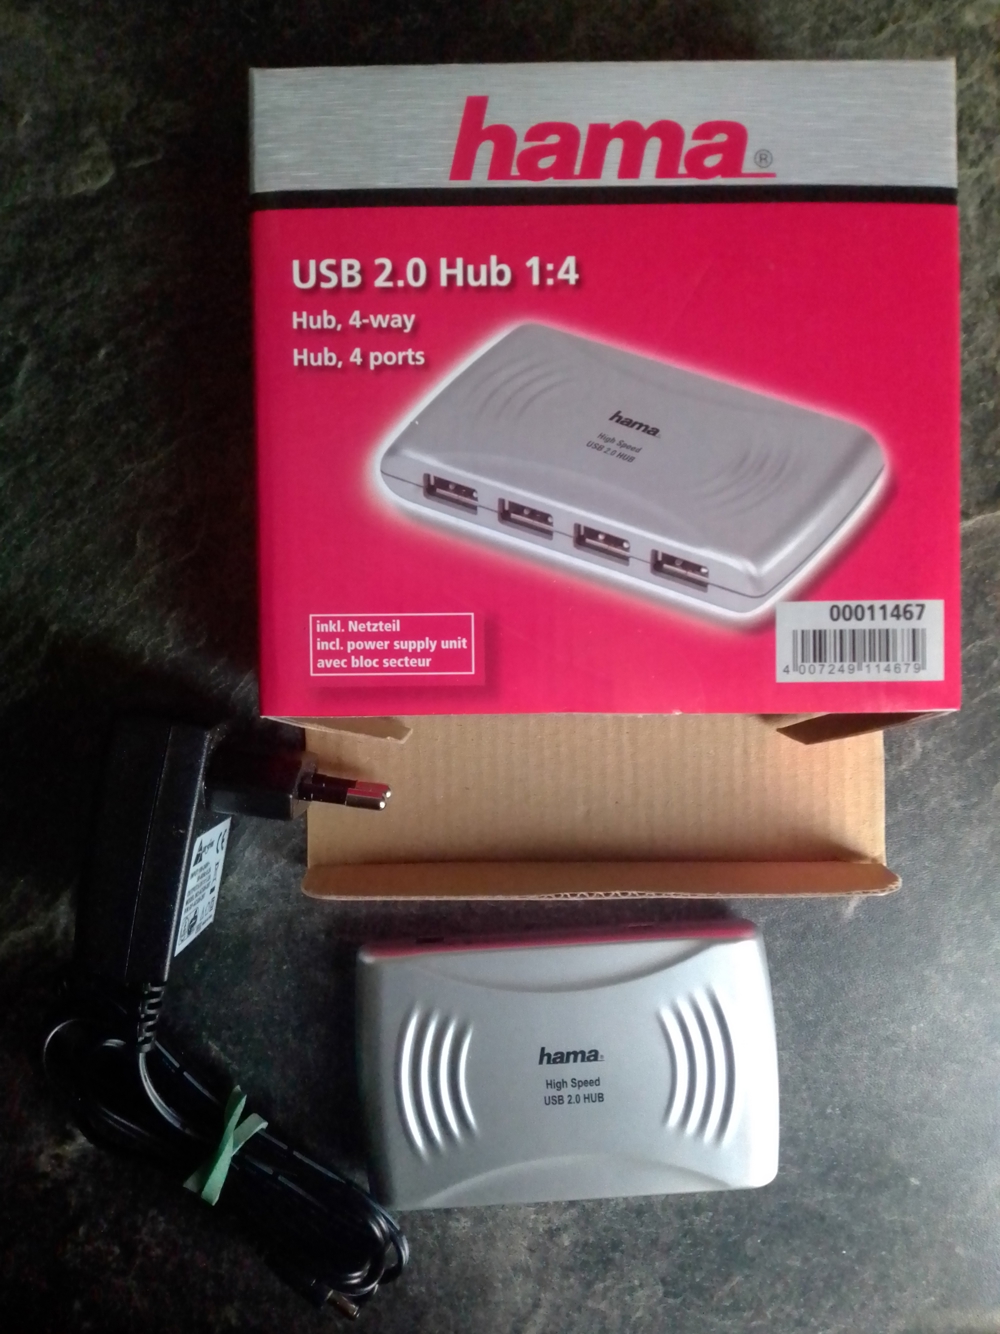 HAMA USB 2.0 HUB